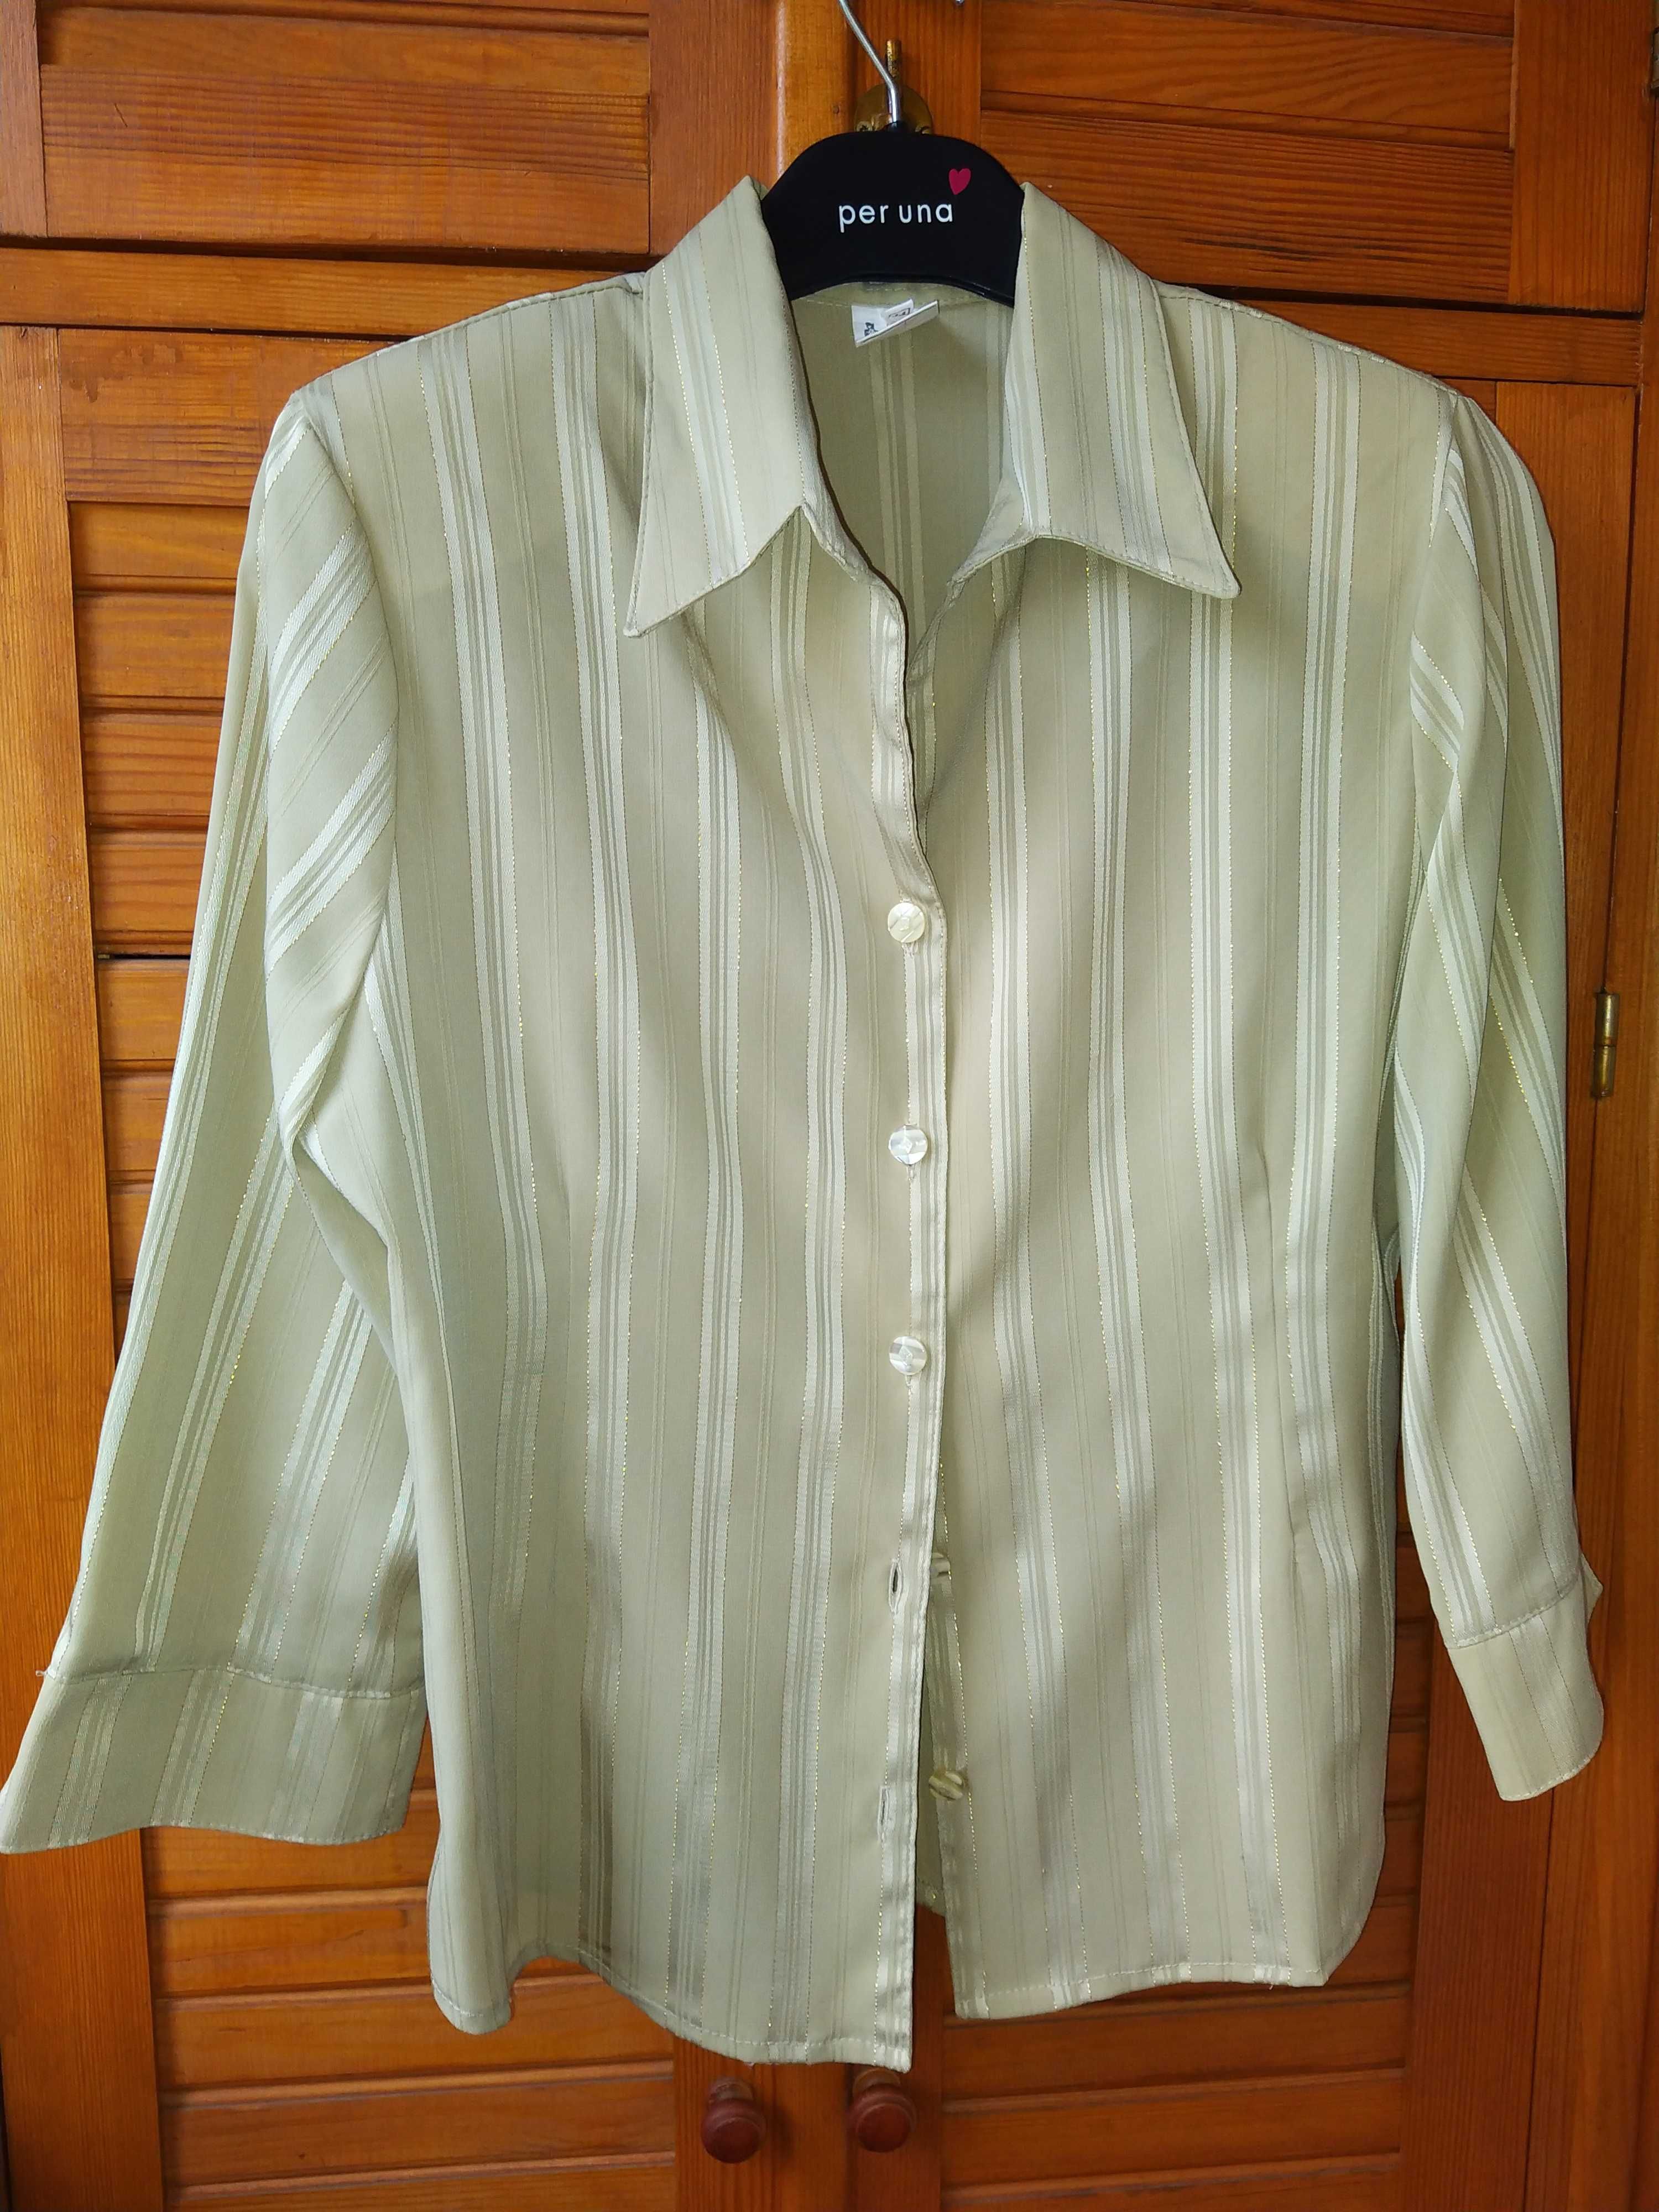 Женская шелковая блузка оливкового цвета. Размер 46-48.